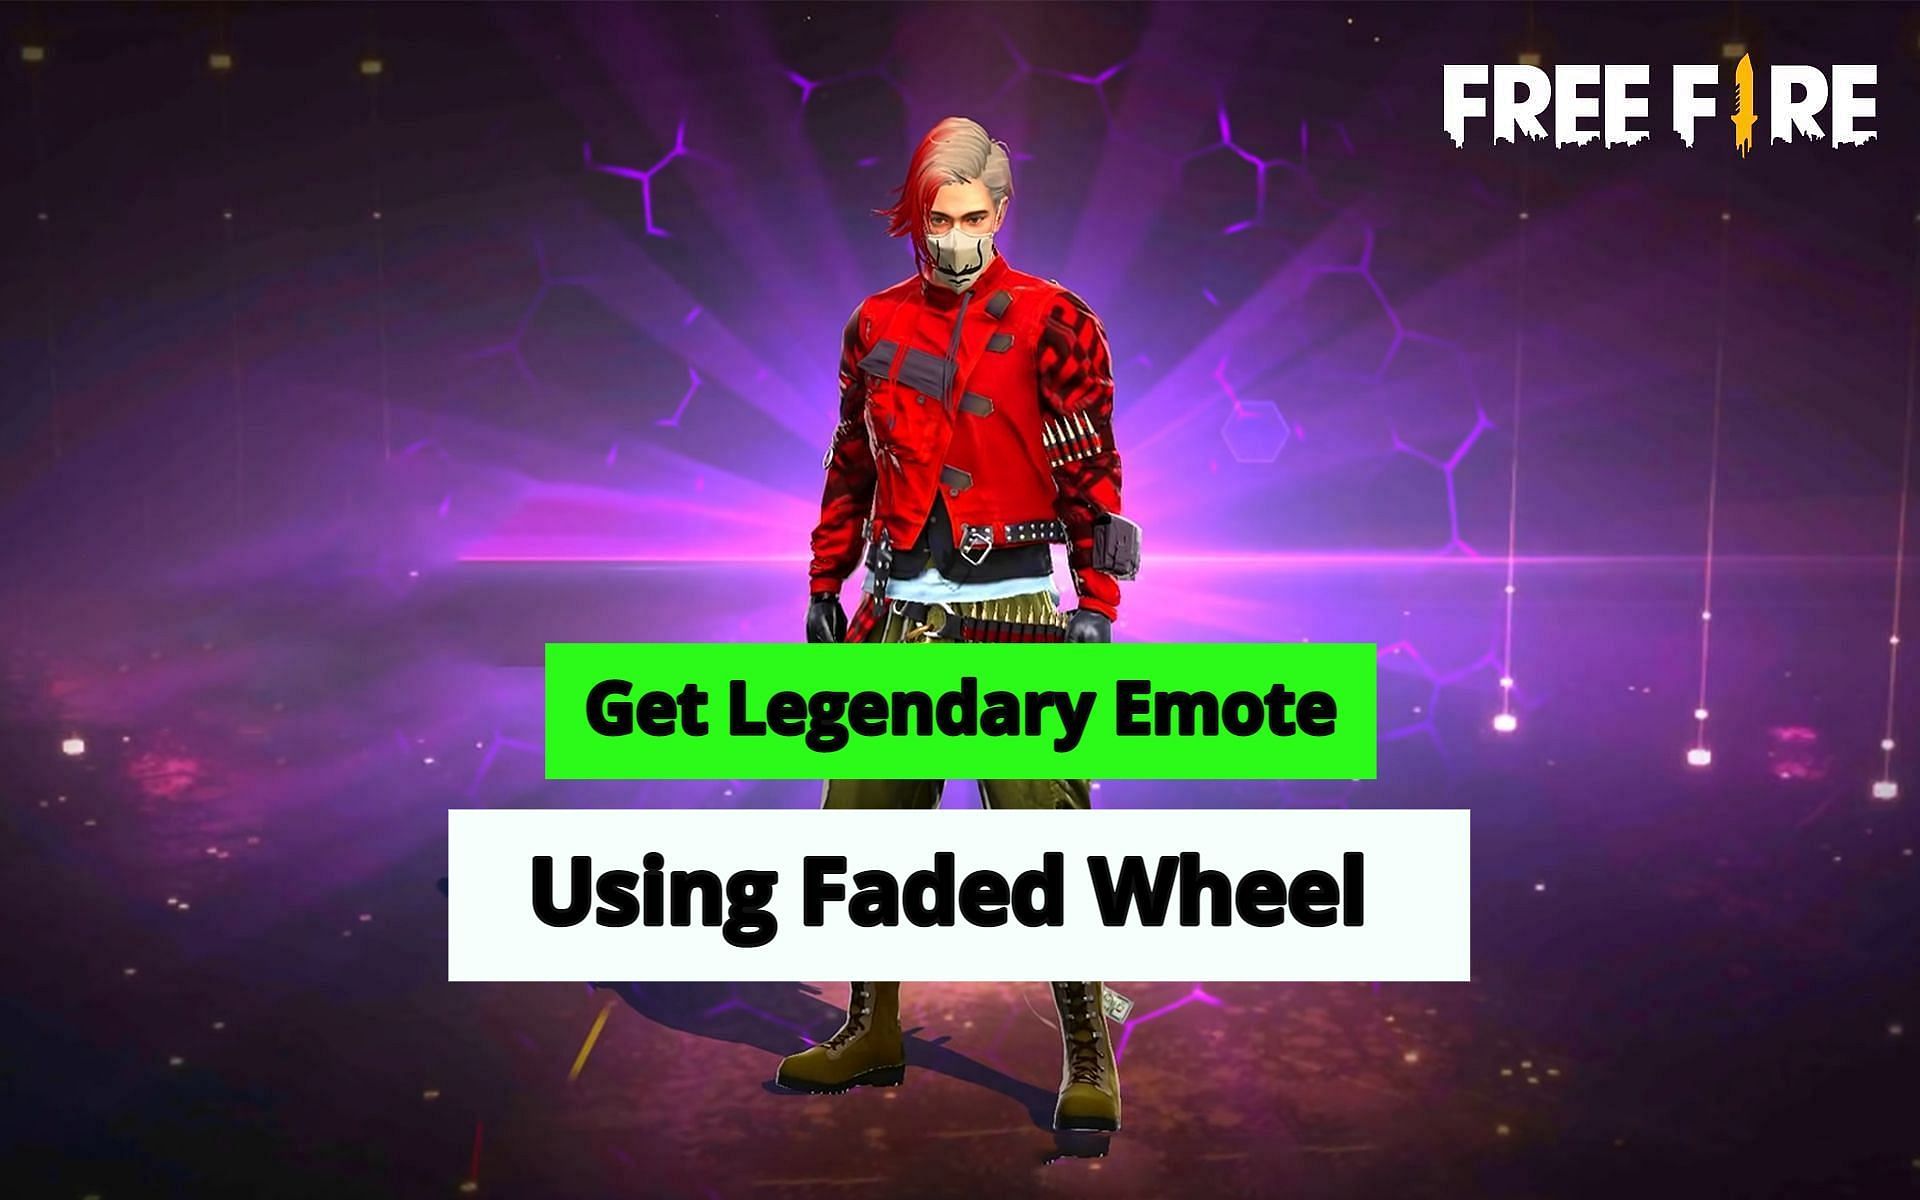 Free Fire में New Faded Wheel से लिजेंड्री इमोट कैसे प्राप्त करें?